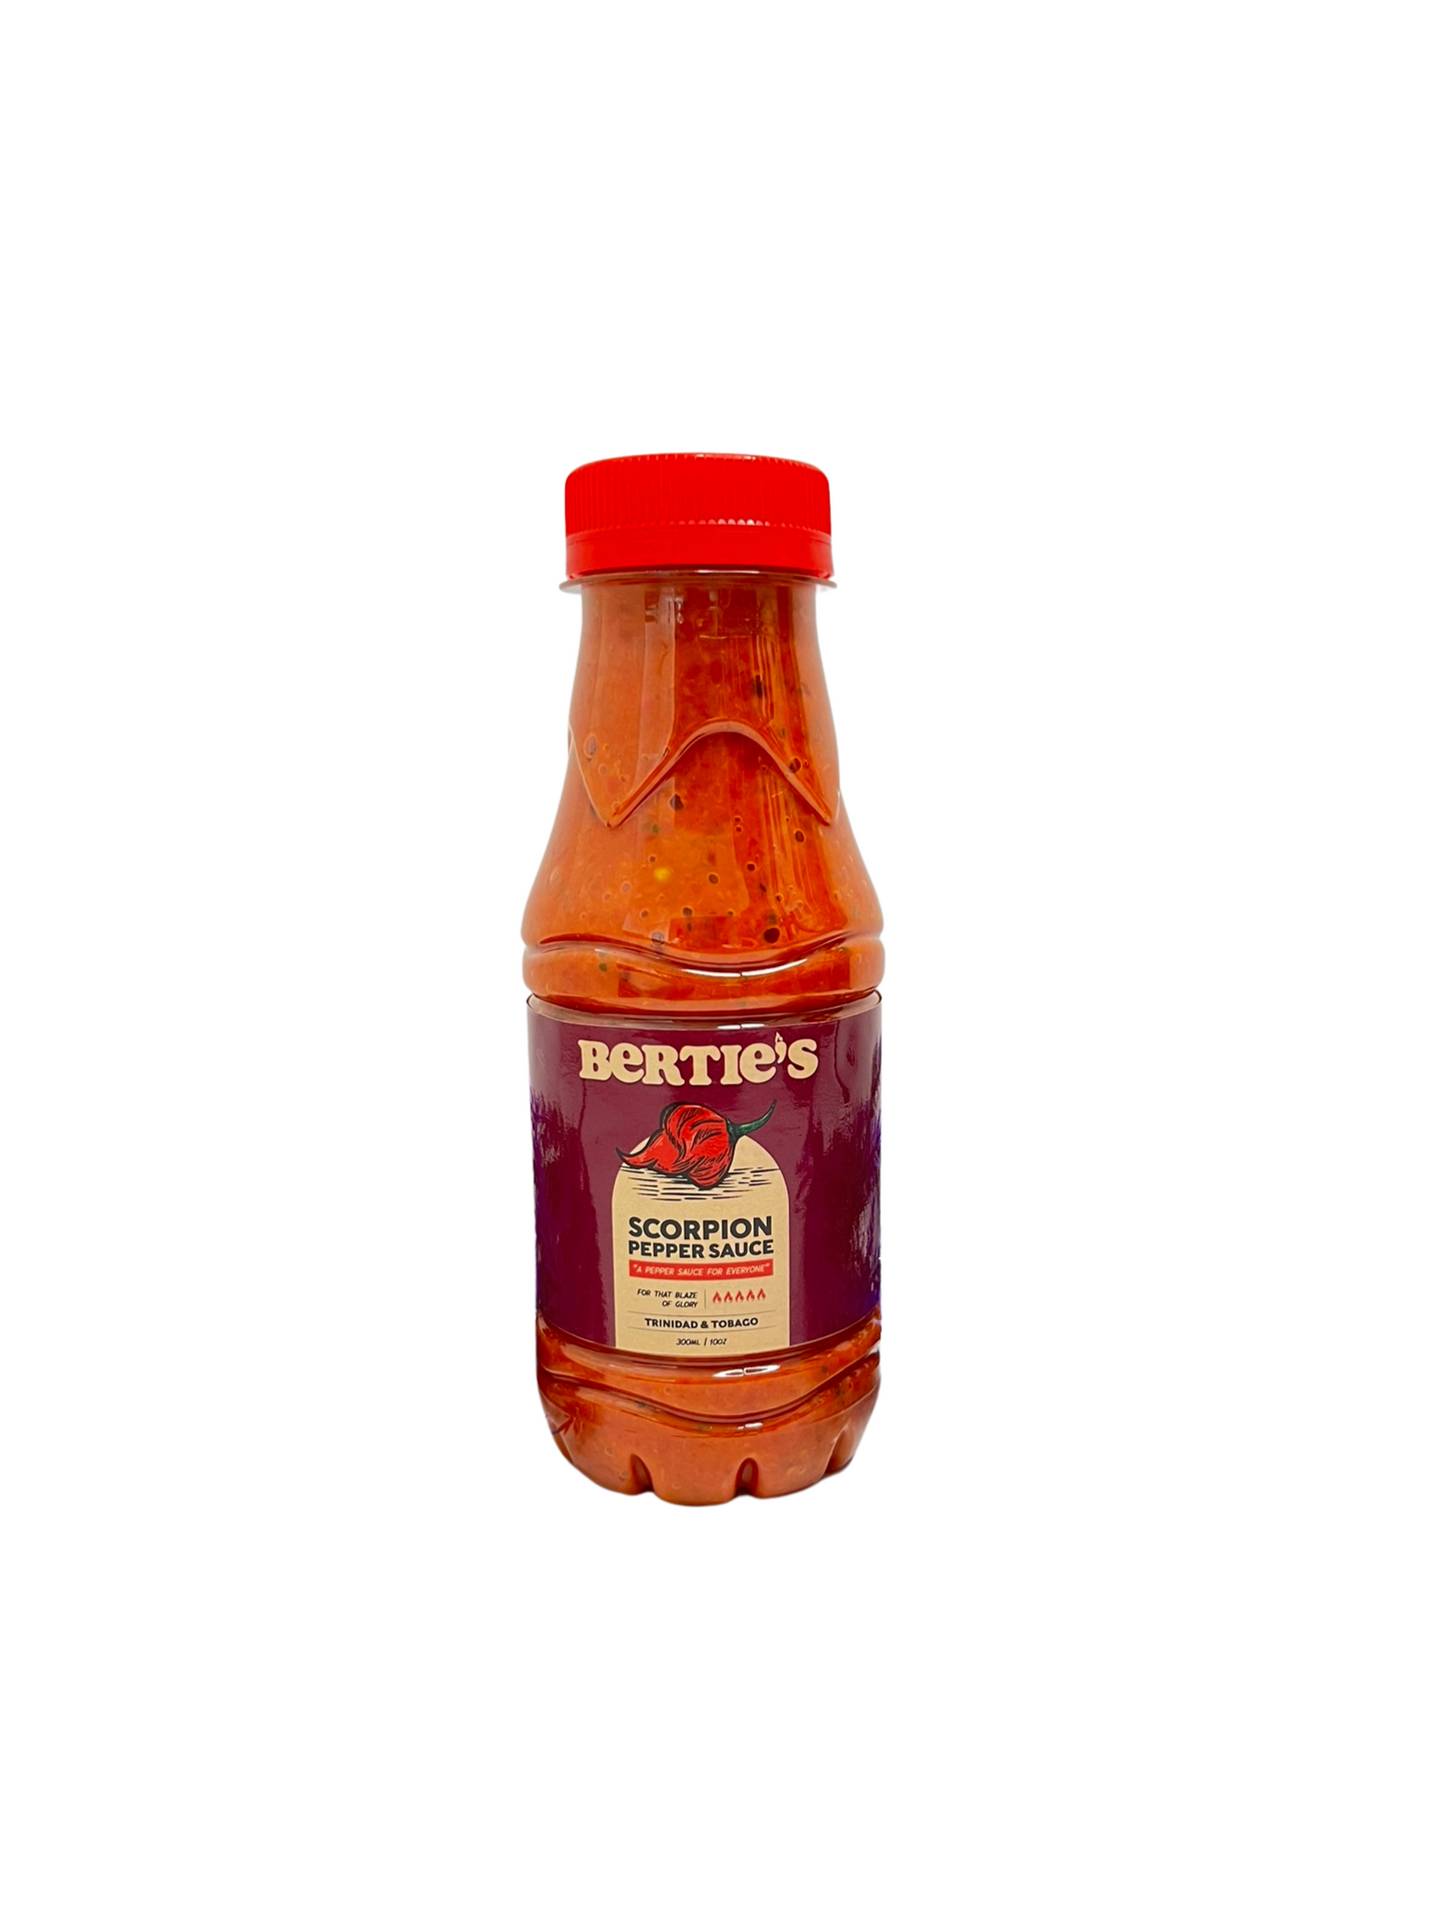 Bertie's Scorpion Pepper Sauce